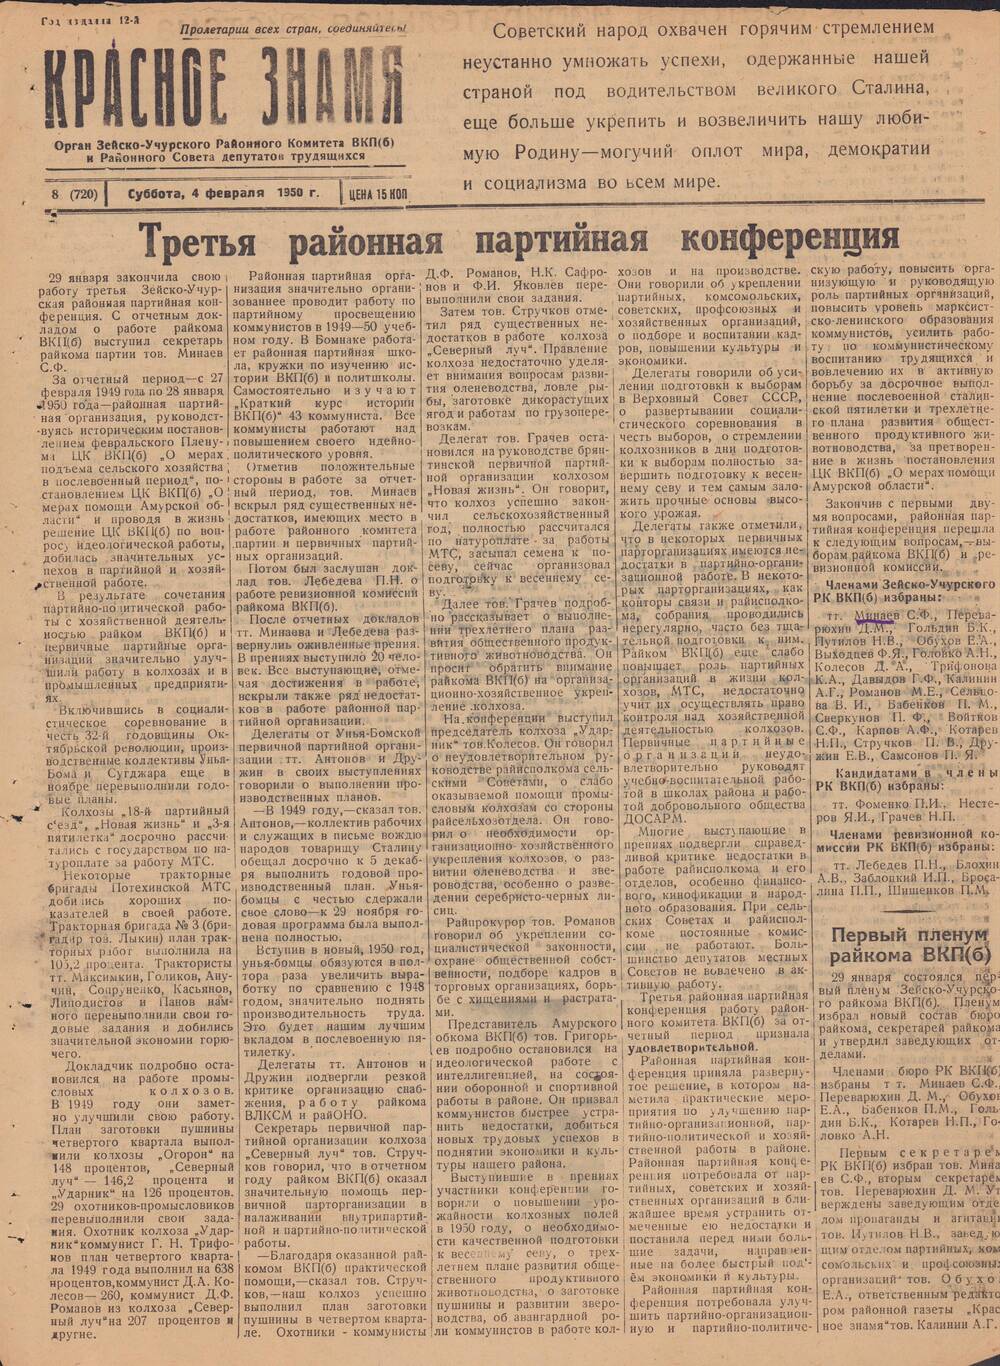 Газета Красное знамя №8 (720) от 4 февраля 1950 года.